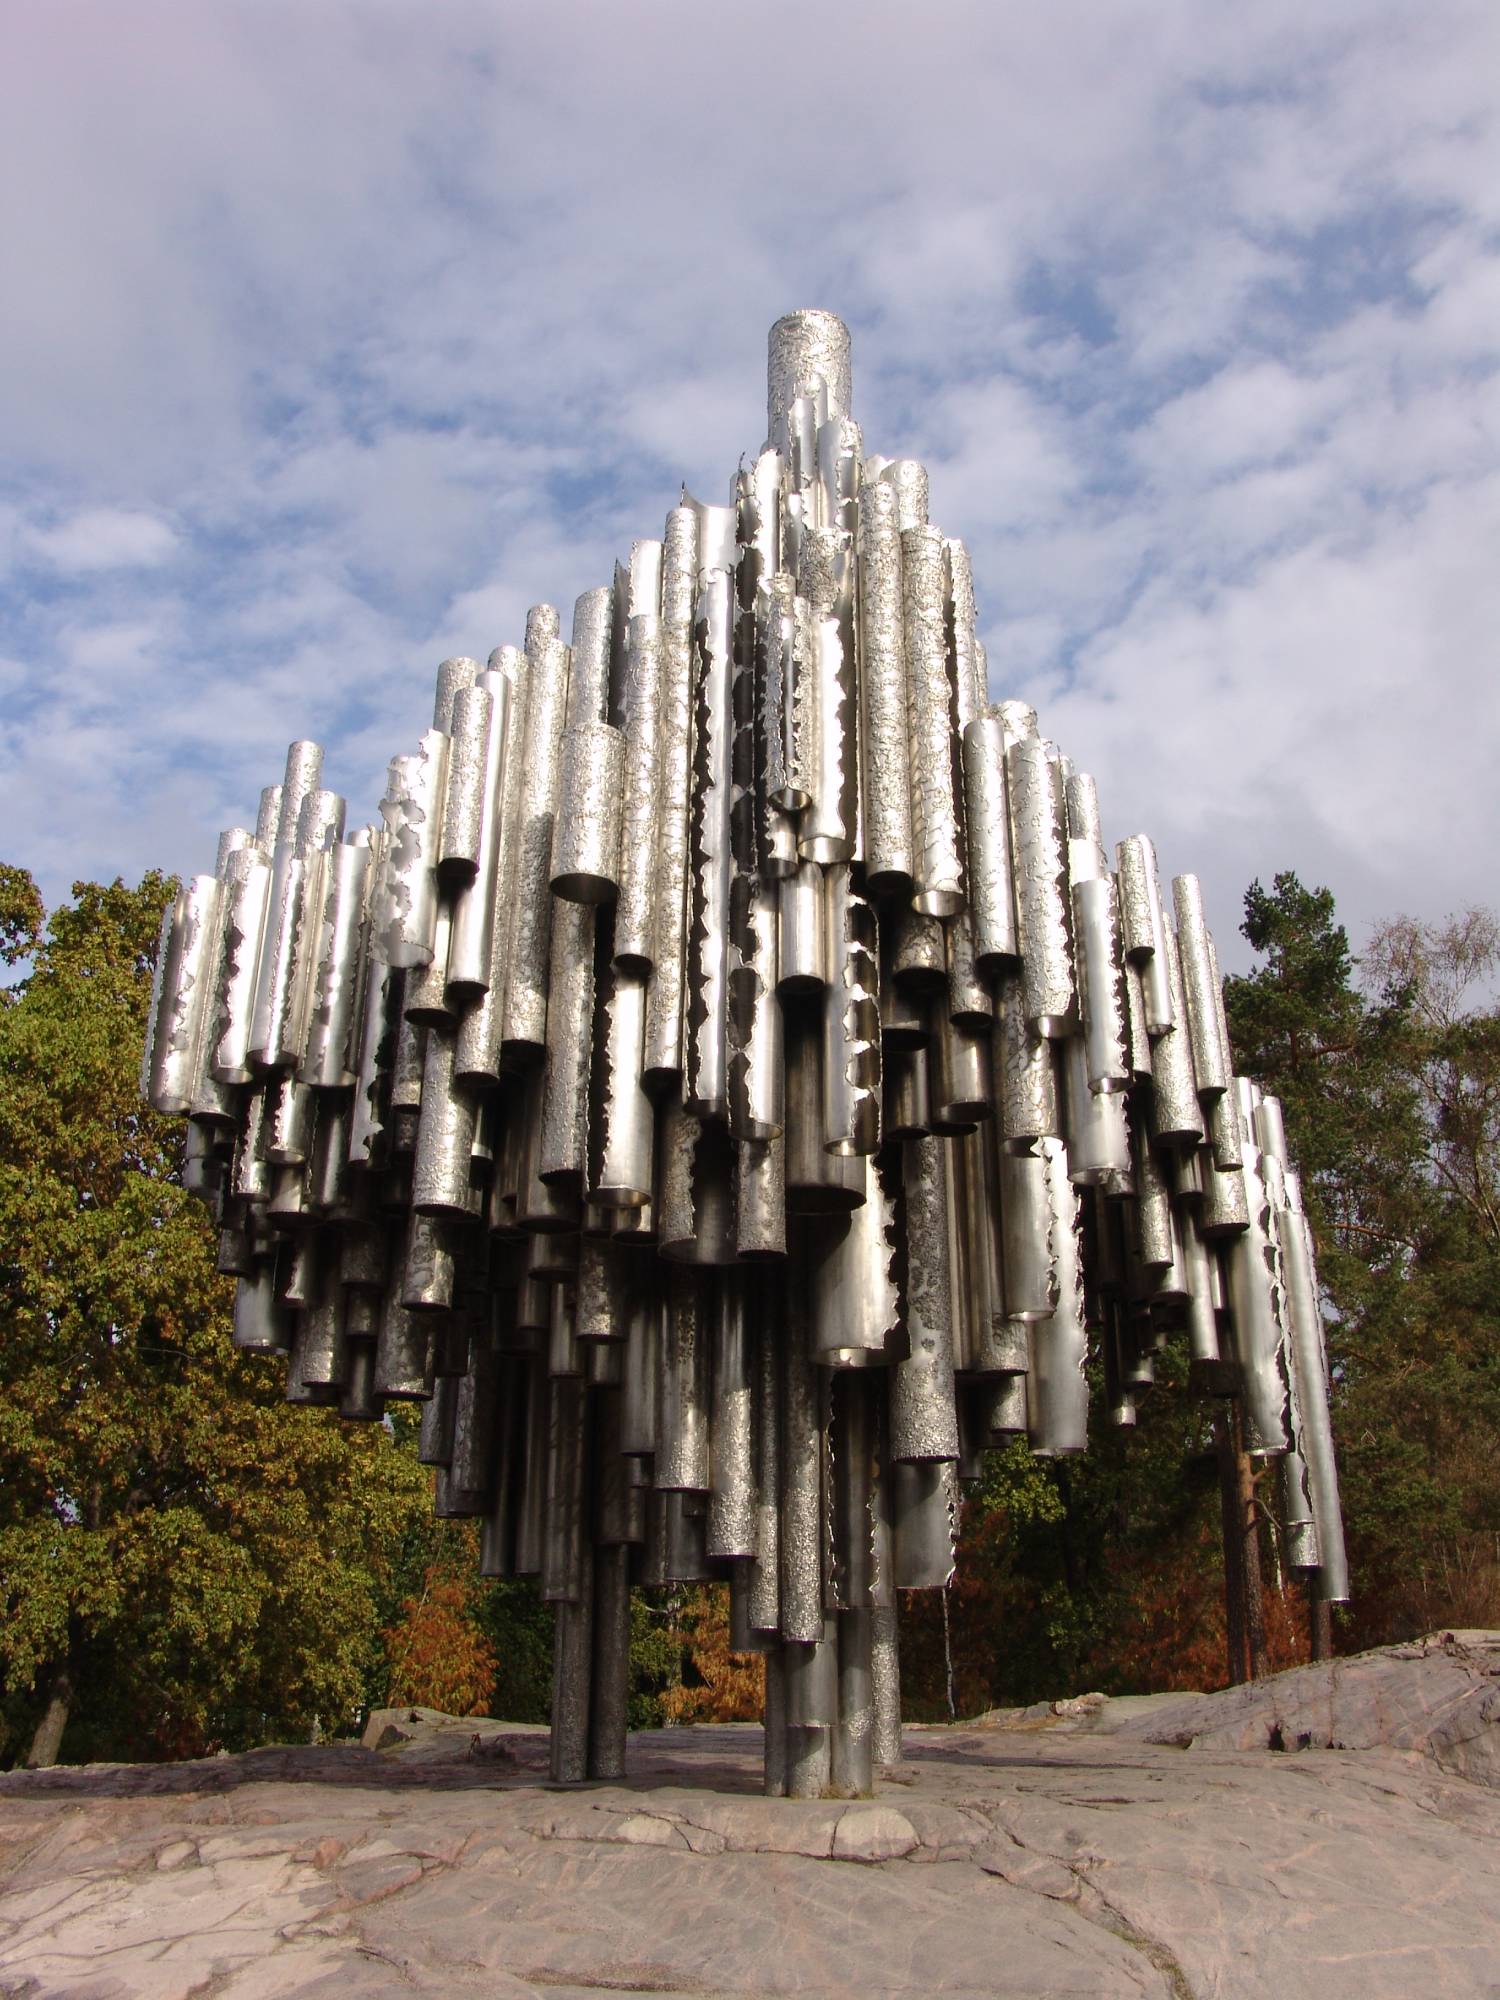 Helsinki - Sibelius Monument